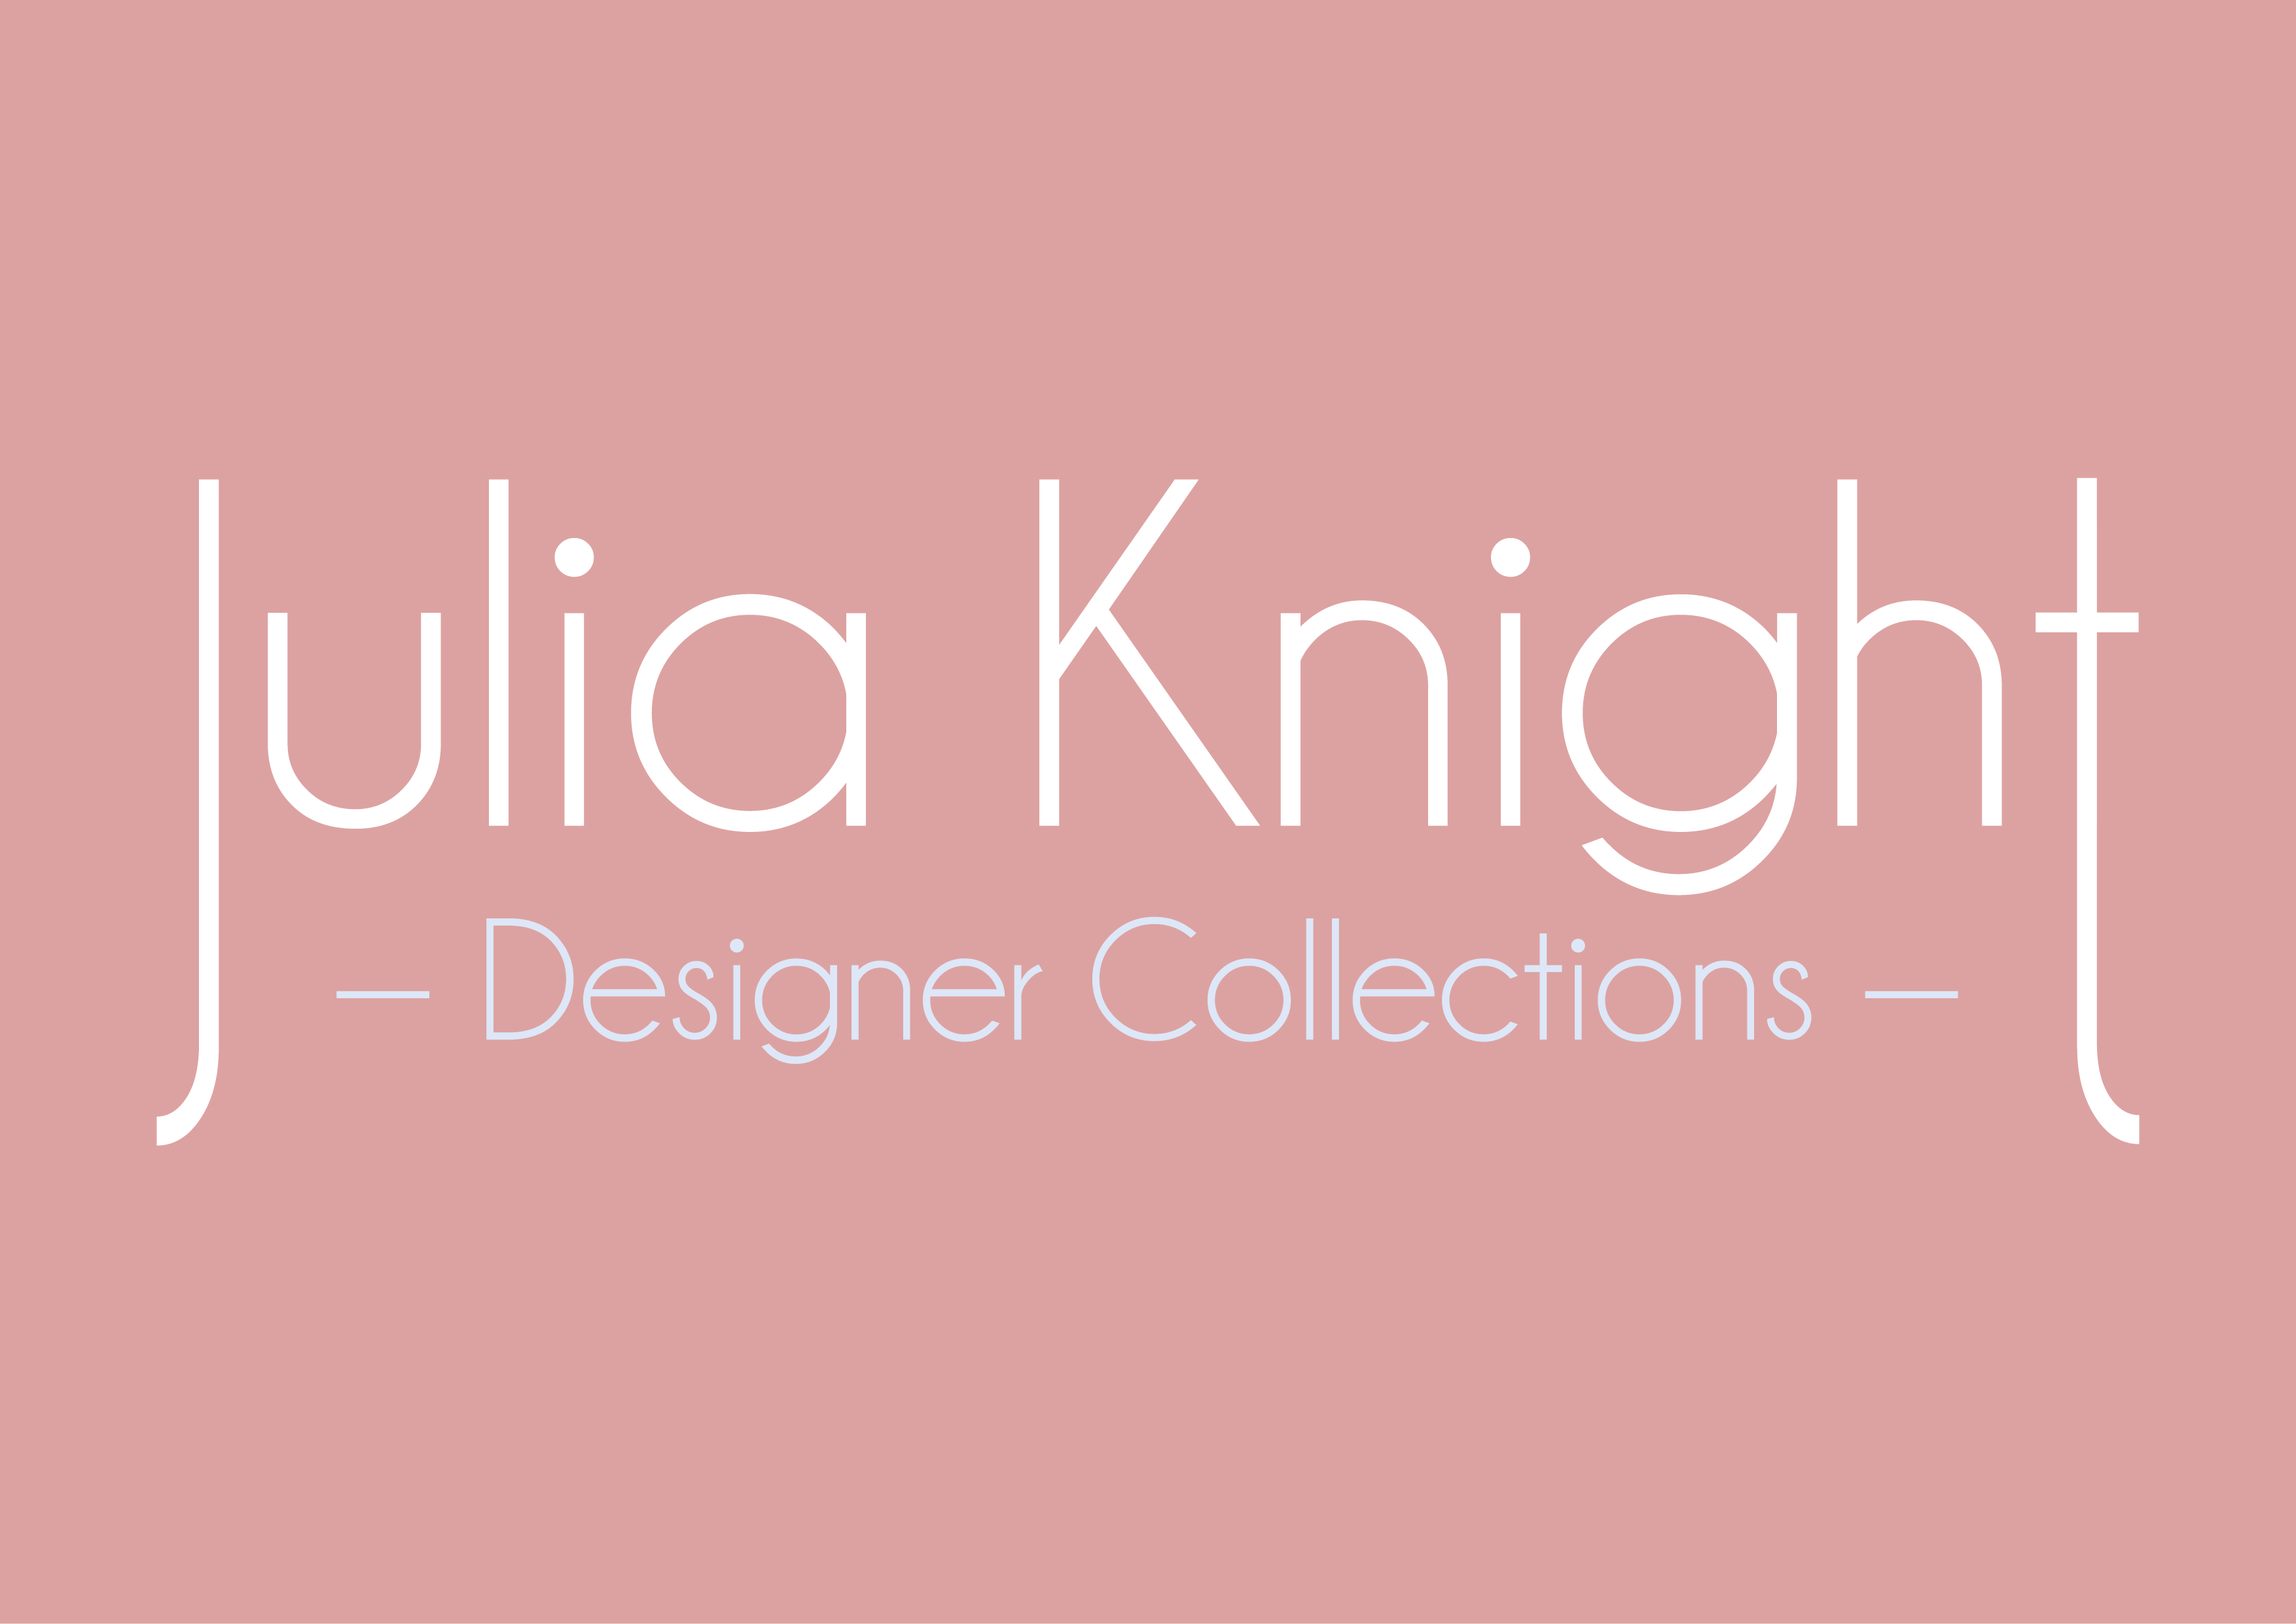 Julia Knight Designer Collections logo design, by Webbel UK